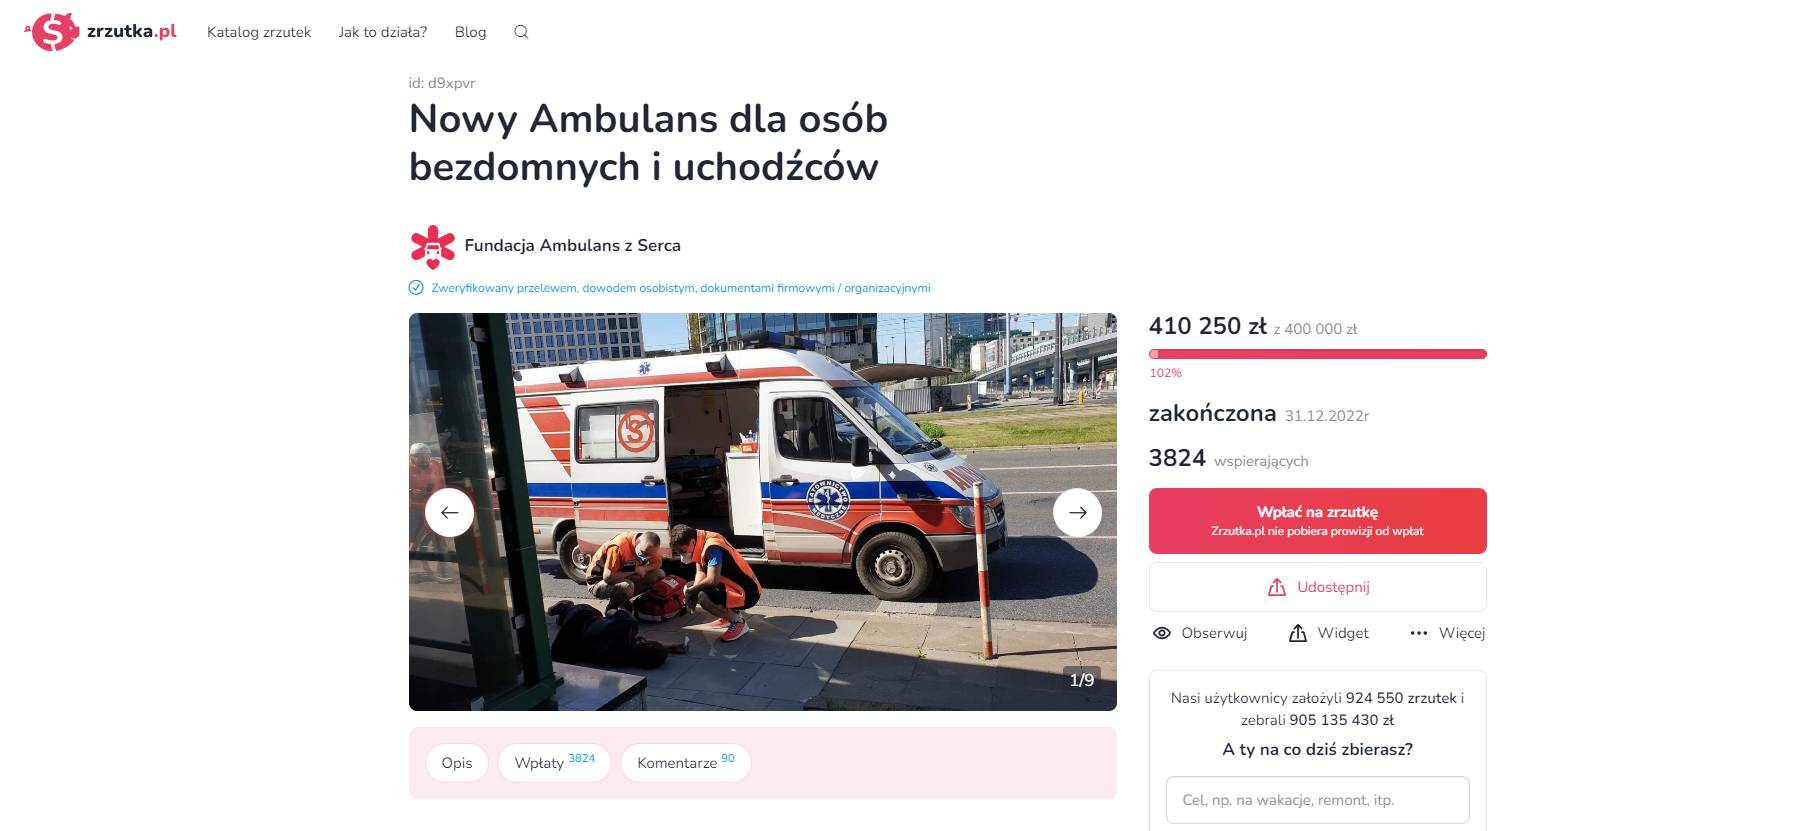 Widok strony zrzutka.pl. Napis: "Nowy Ambulans dla osób bezdomnych i uchodźców" i informacja, że 31 grudnia 2022 r. udało się zebrać 410 250 zł z 400 000 zł